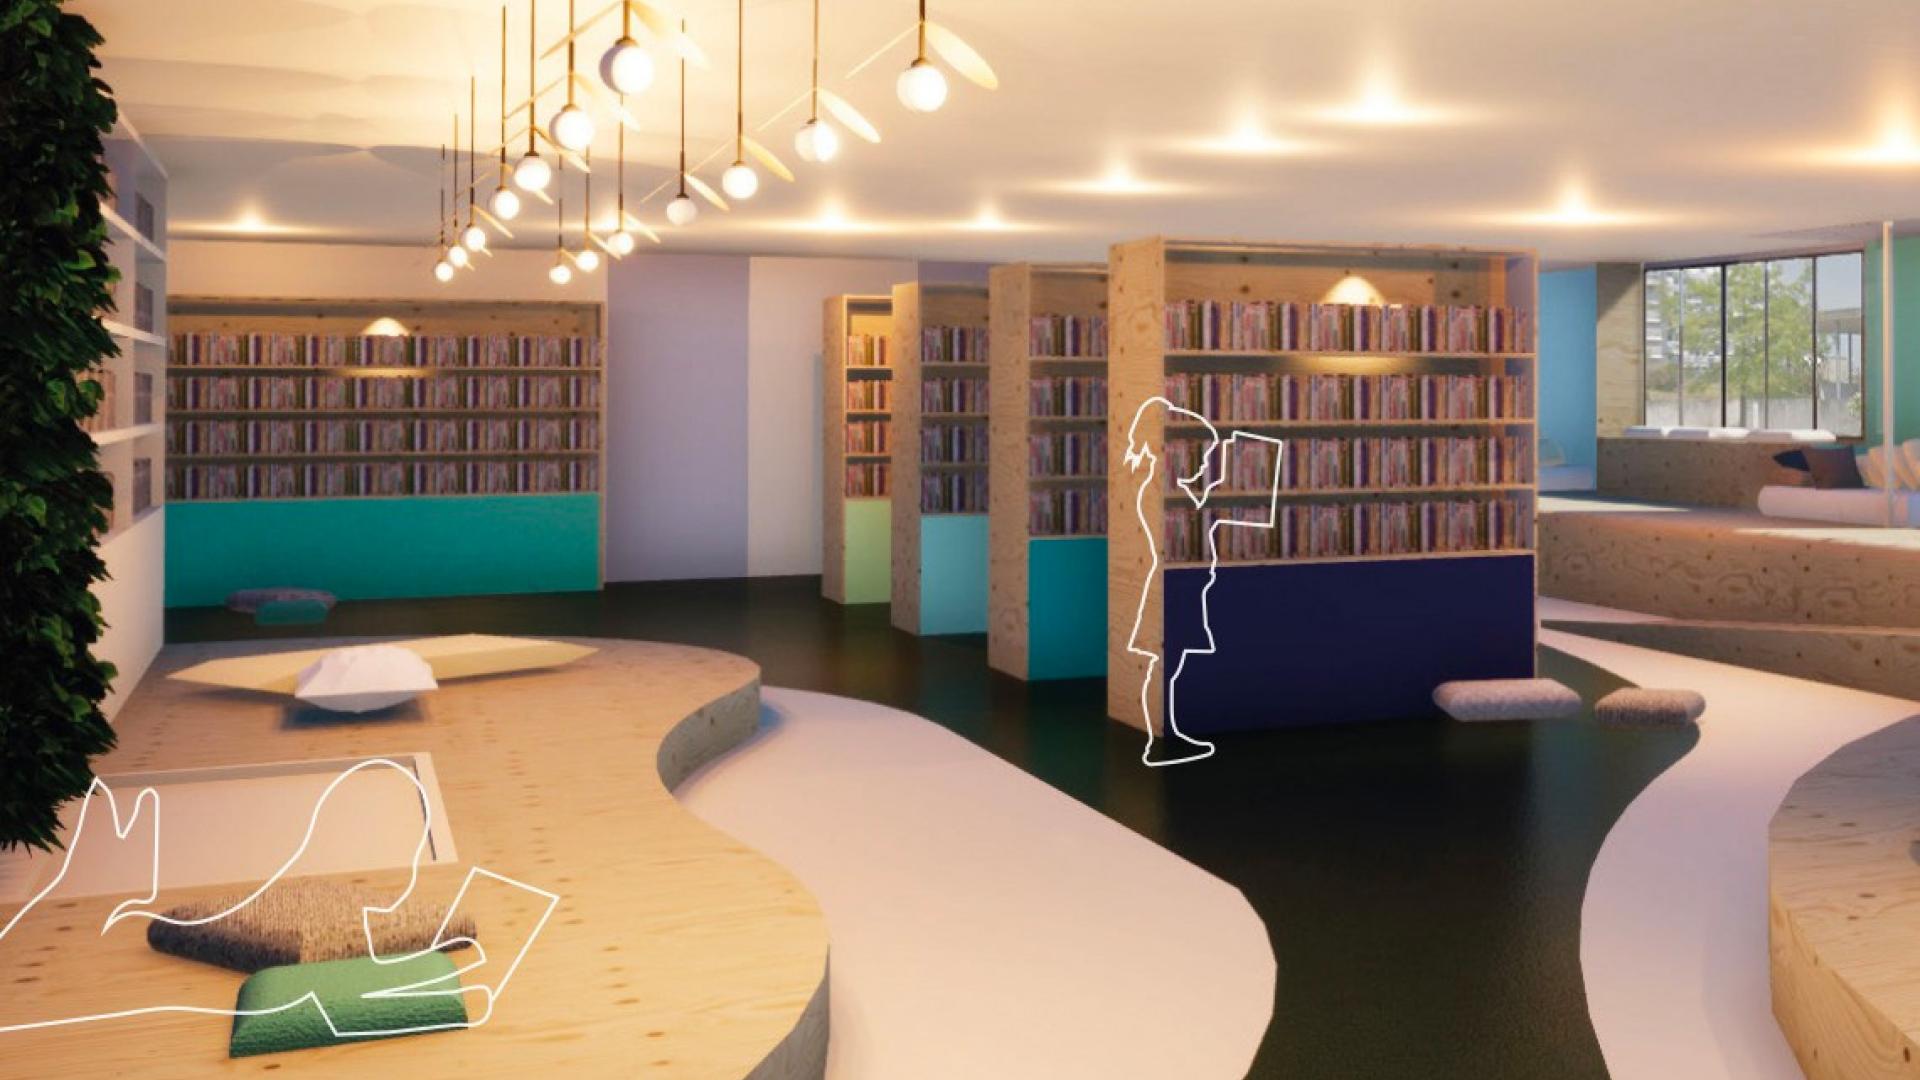 Projet Noia - Espace avec un coin bibliothèque conçu pour les enfants atteints de troubles de l’attention ou d’hyperactivité